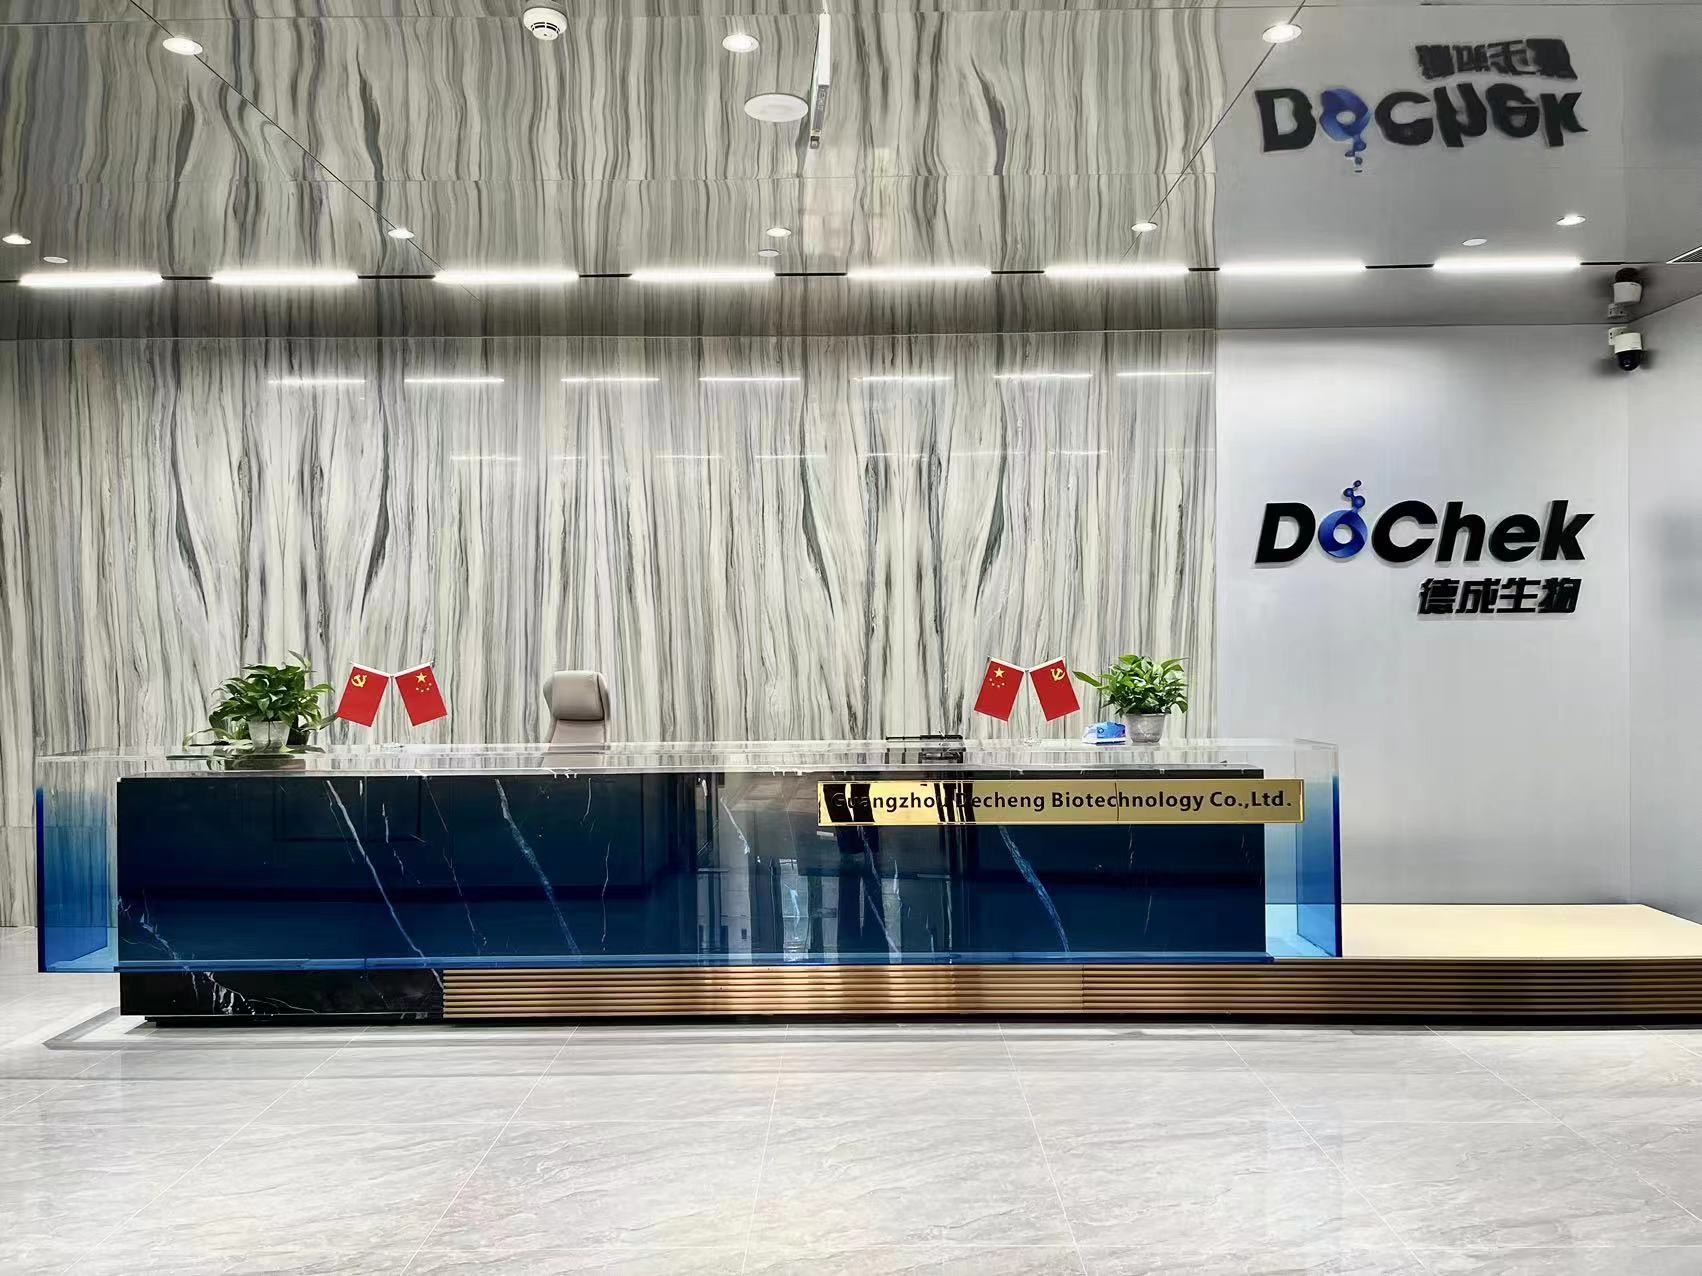 ประเทศจีน Guangzhou Decheng Biotechnology Co.,LTD รายละเอียด บริษัท